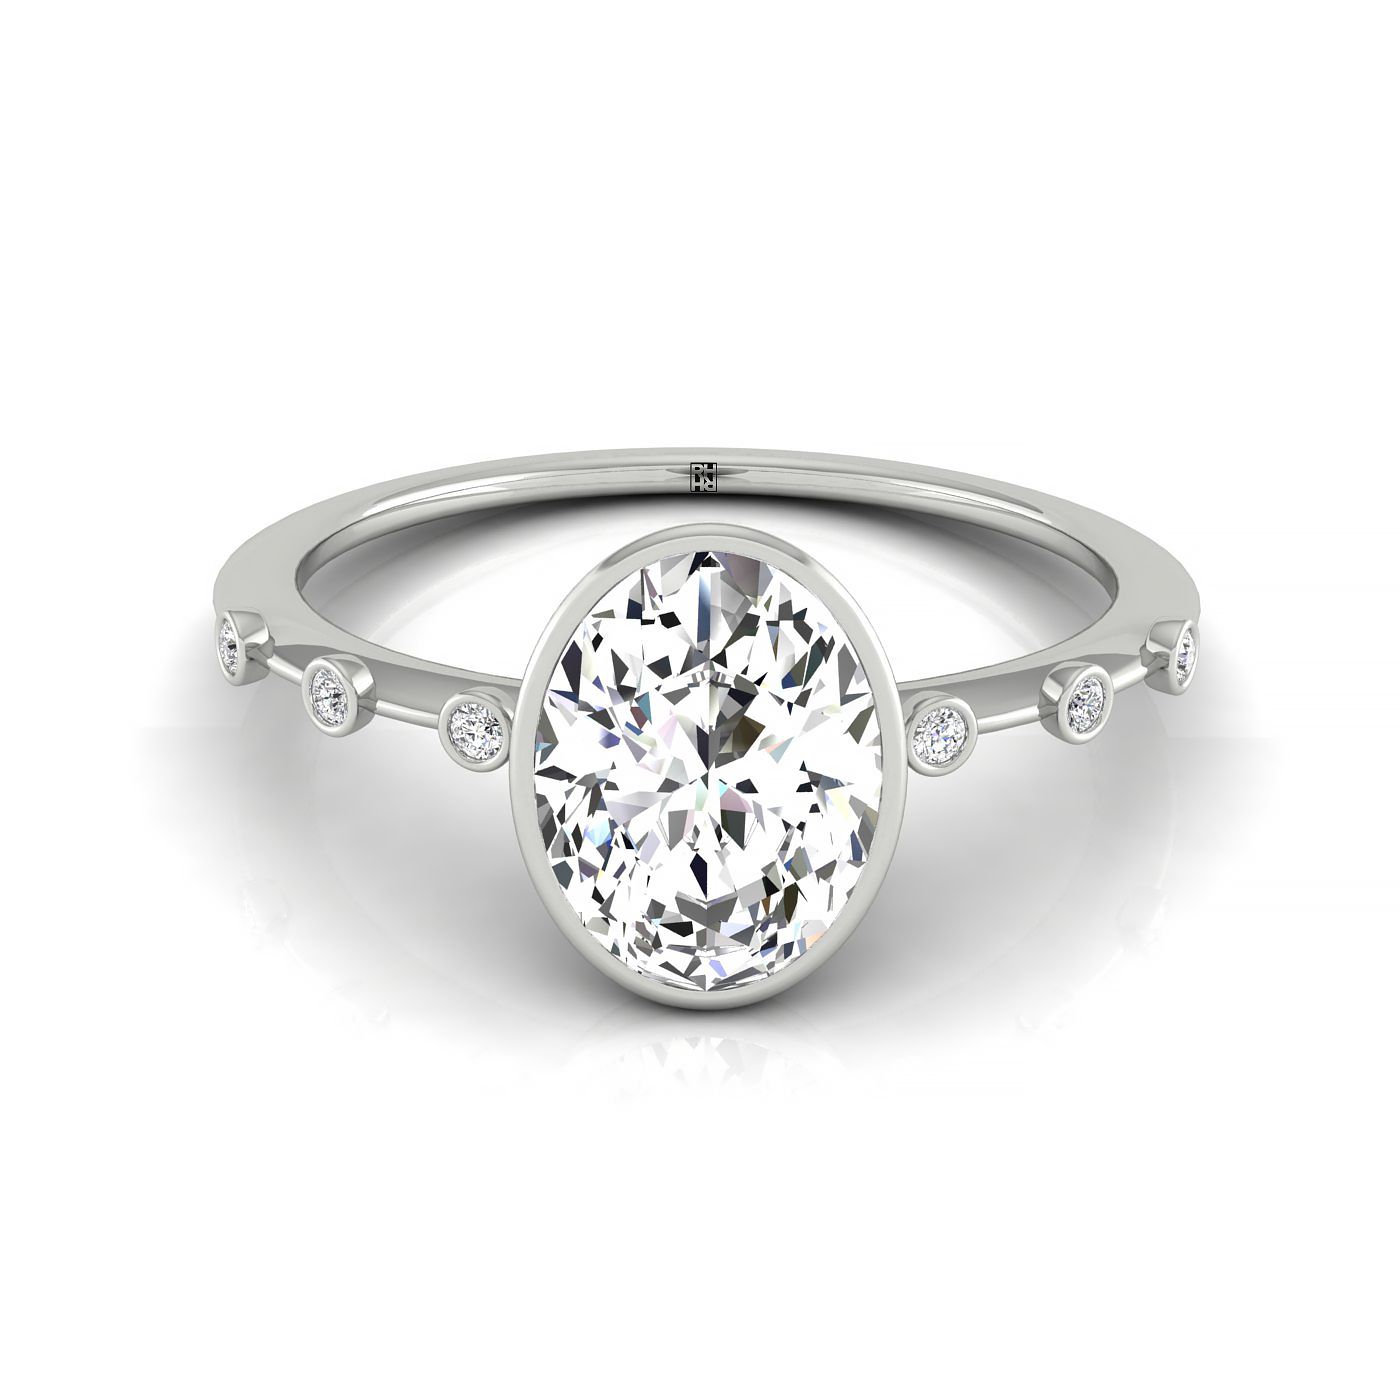 18kw Bezel Set Oval Engagement Ring With 6 Bezel Set Round Diamonds On Shank